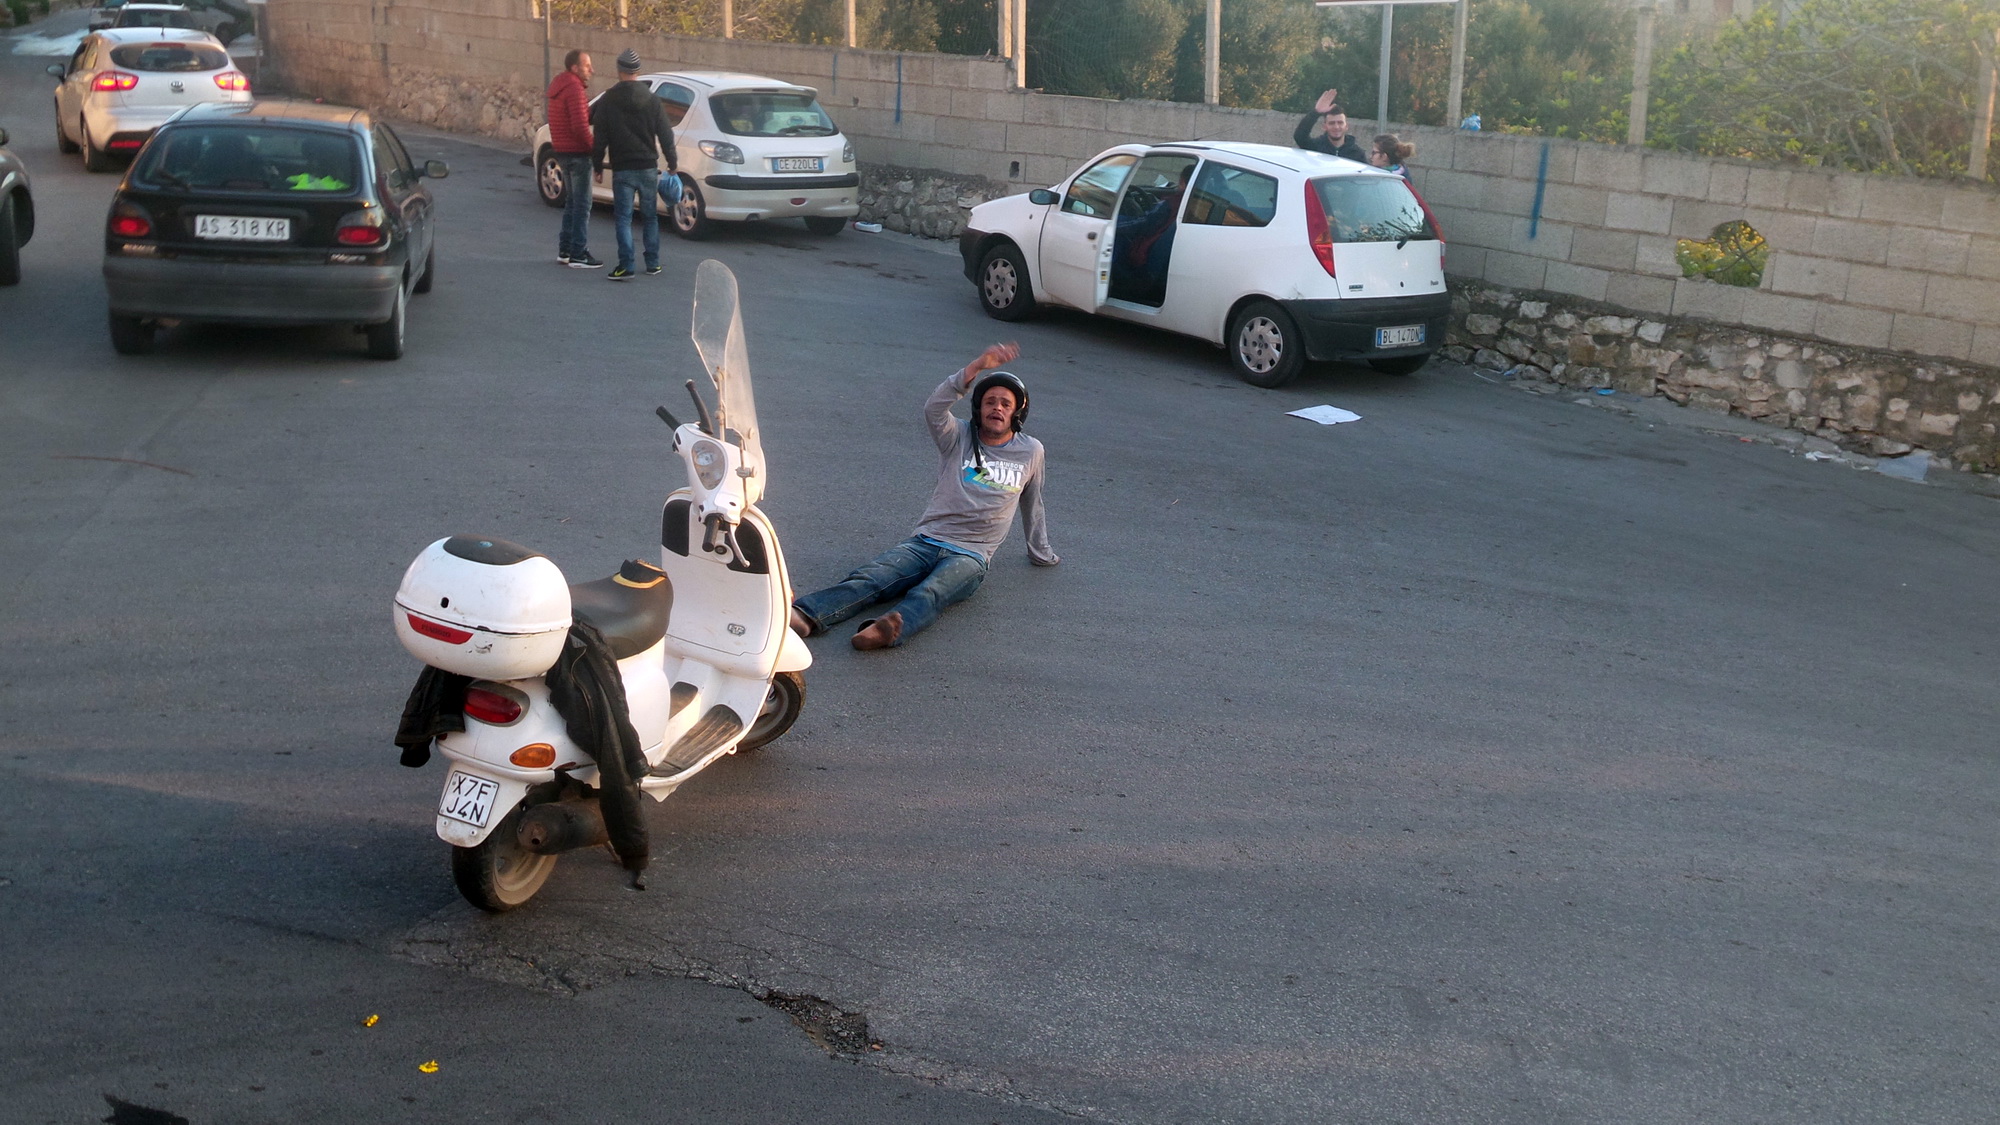  Straniero in scooter reagisce allo stop dei vigili: si accascia a terra e inveisce